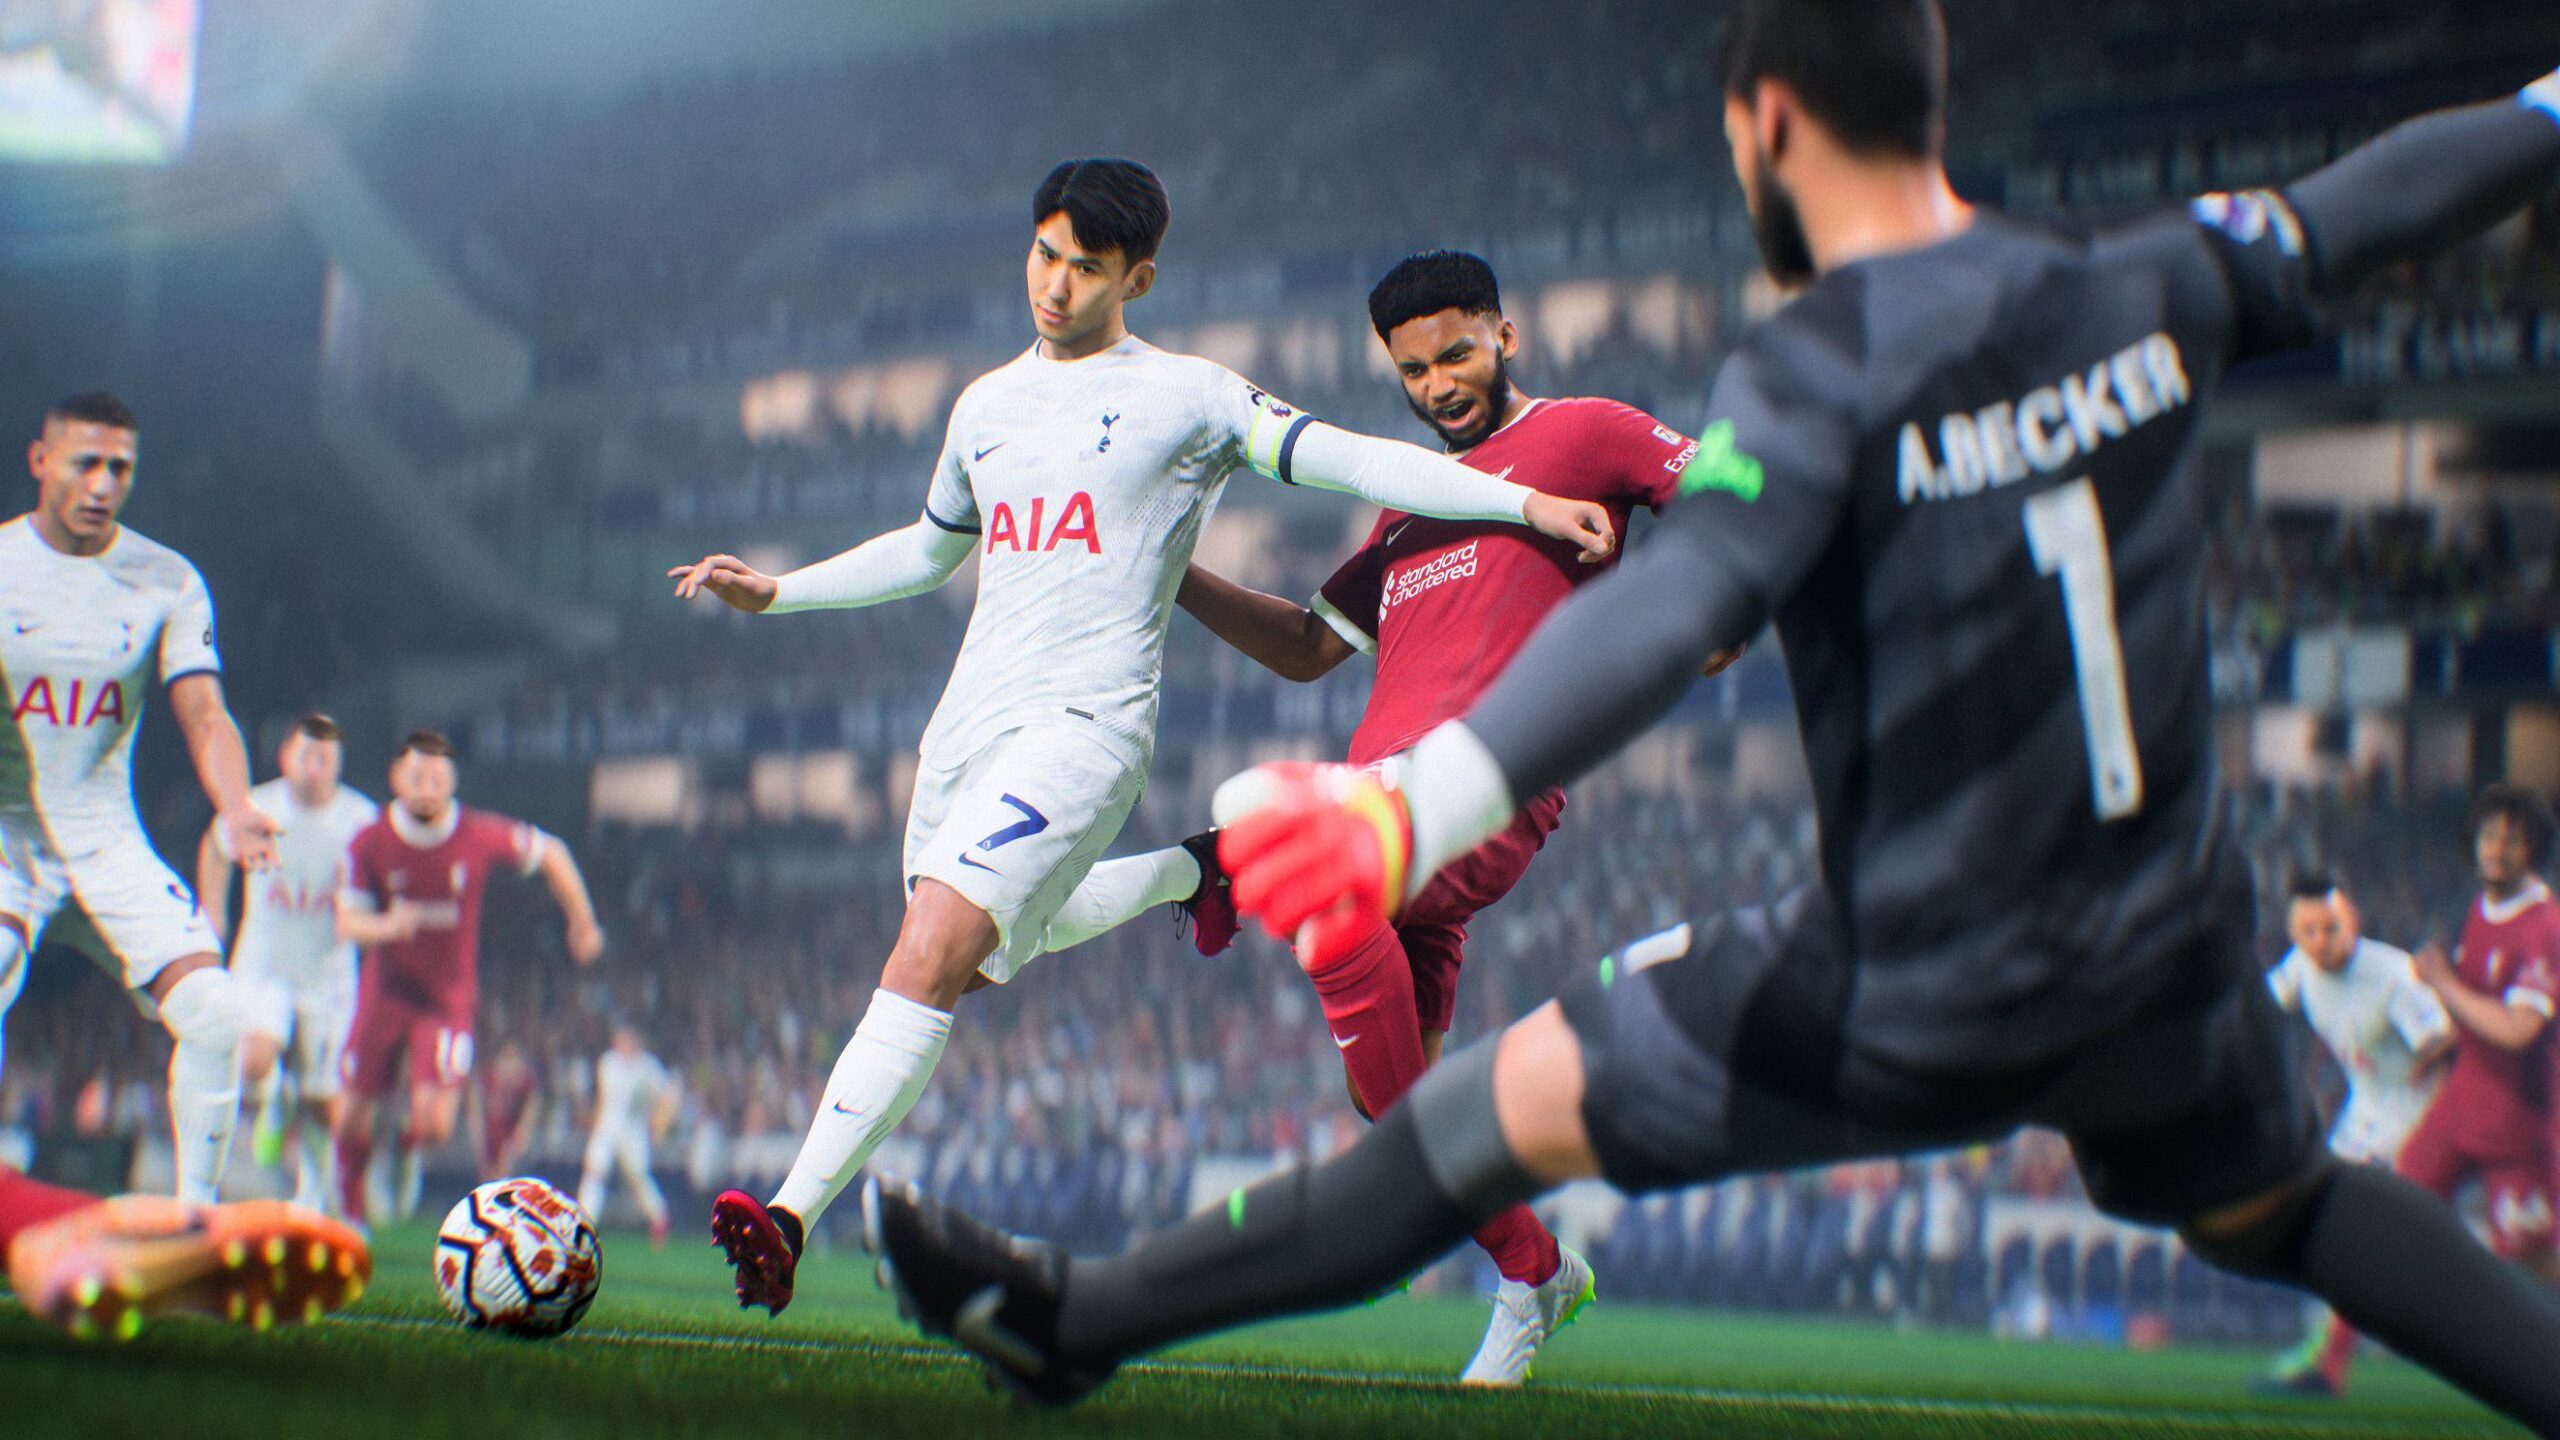 EA revela marca de sua nova franquia de futebol